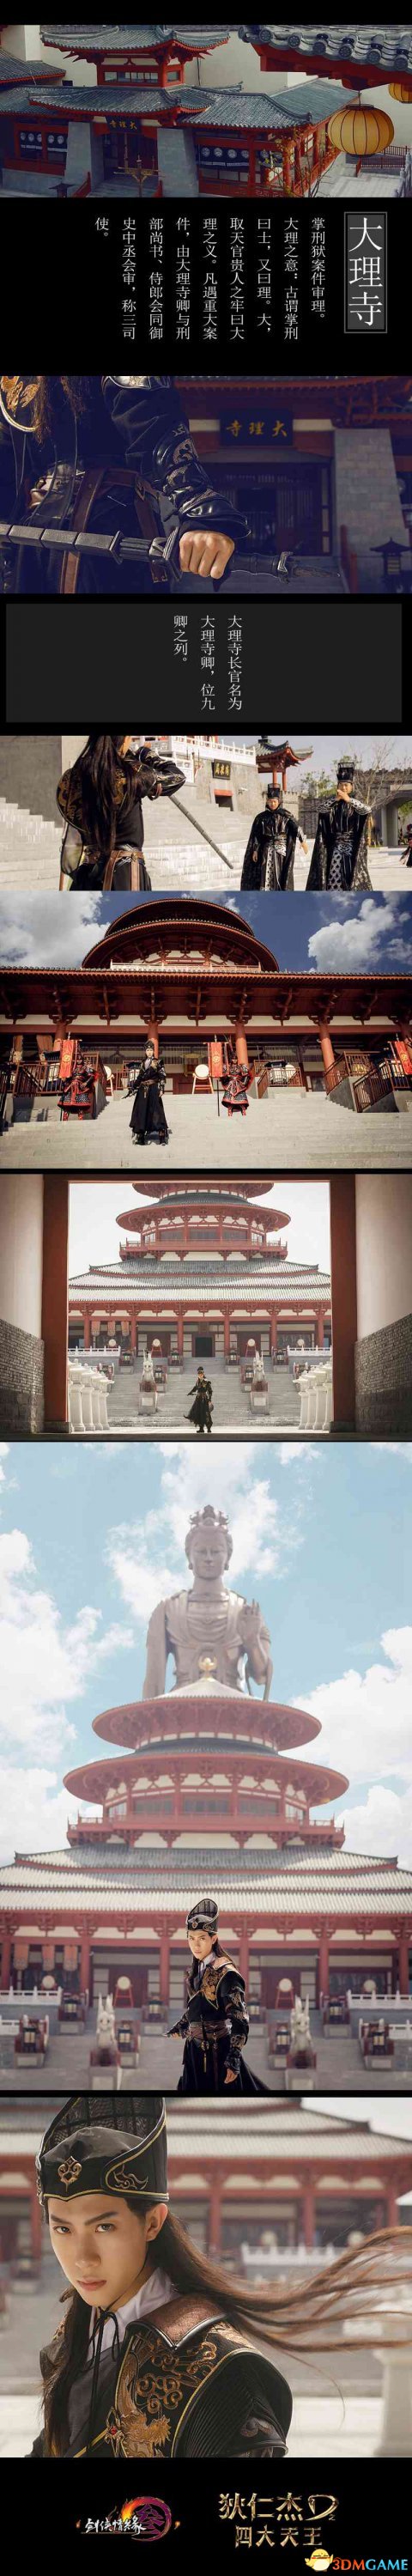 《剑网3》狄仁杰主题礼盒上线 COS演绎皇家风范